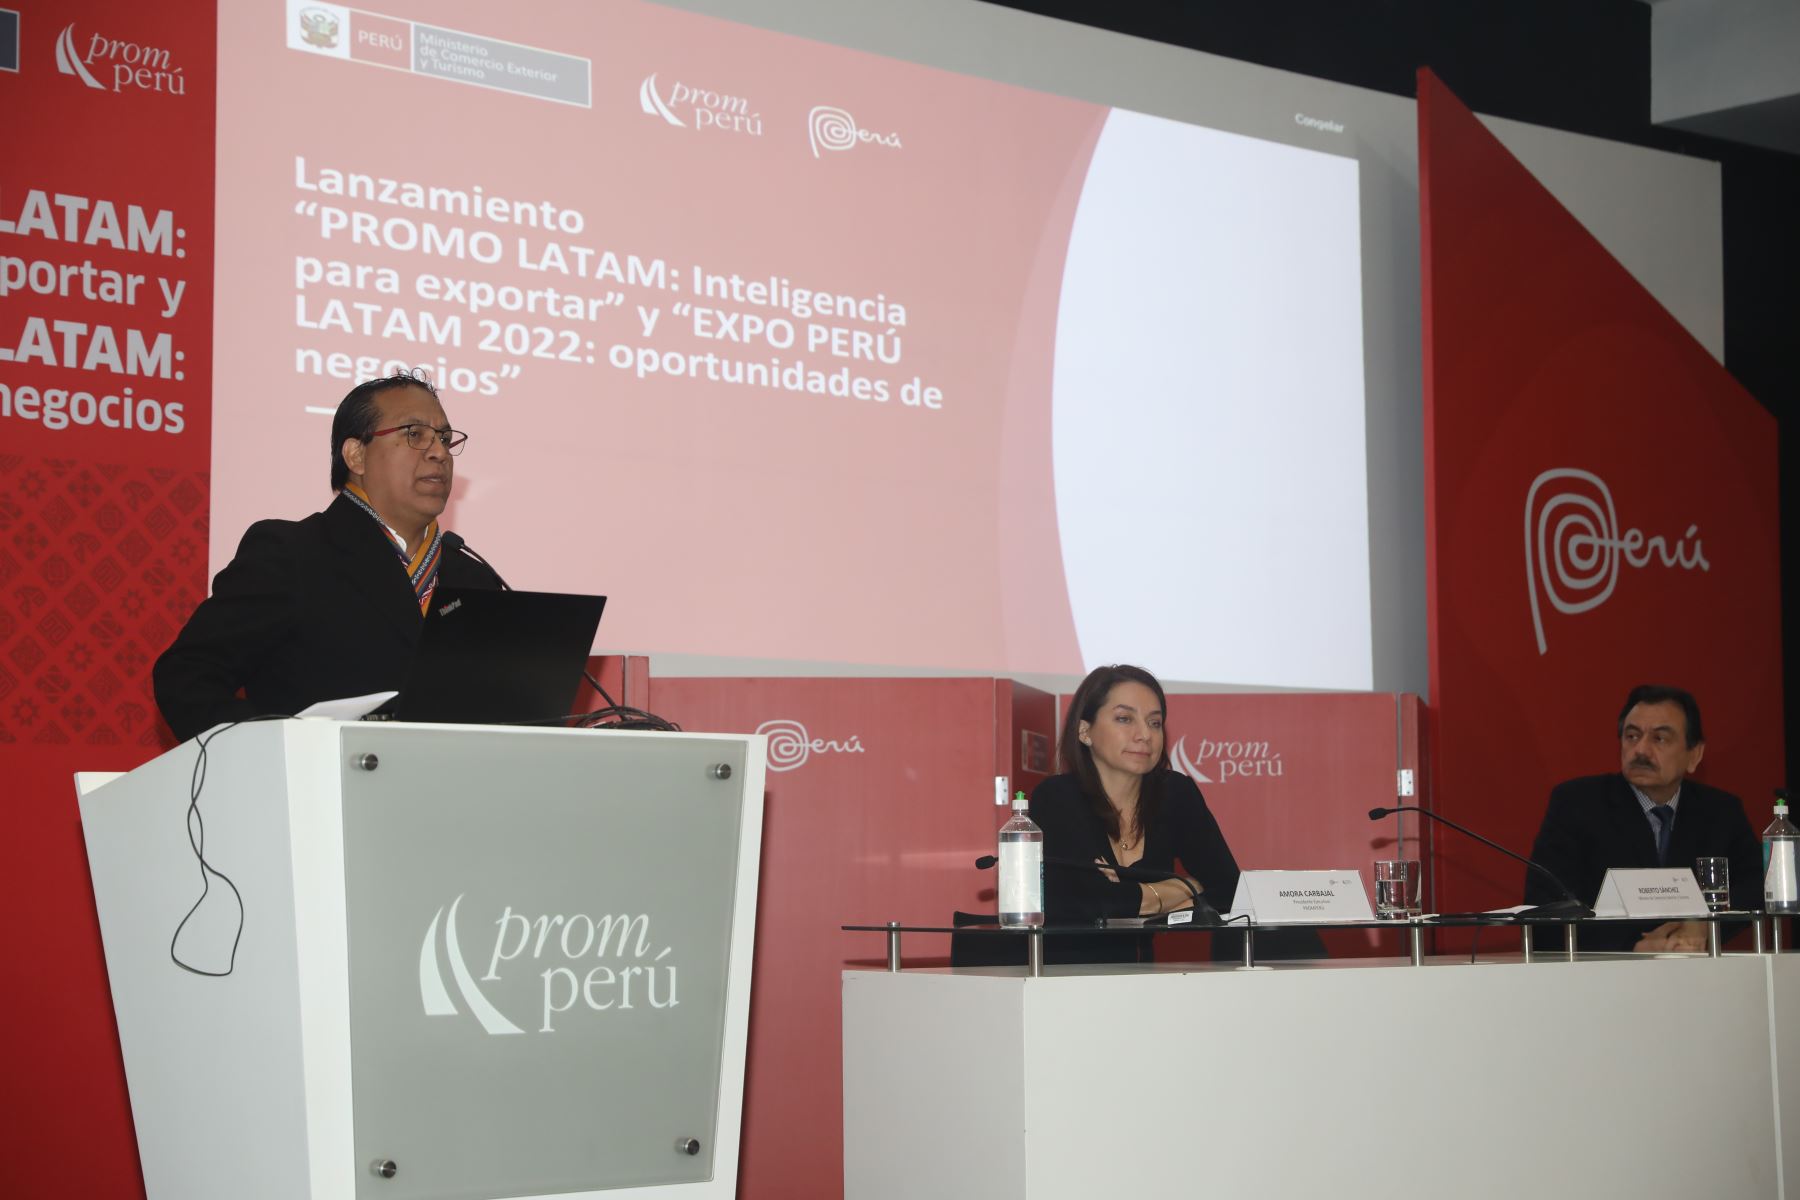 El Mincetur y Promperú confirmaron el lanzamiento de Promo Latam y Expo Perú Latam, Cortesía Promperú